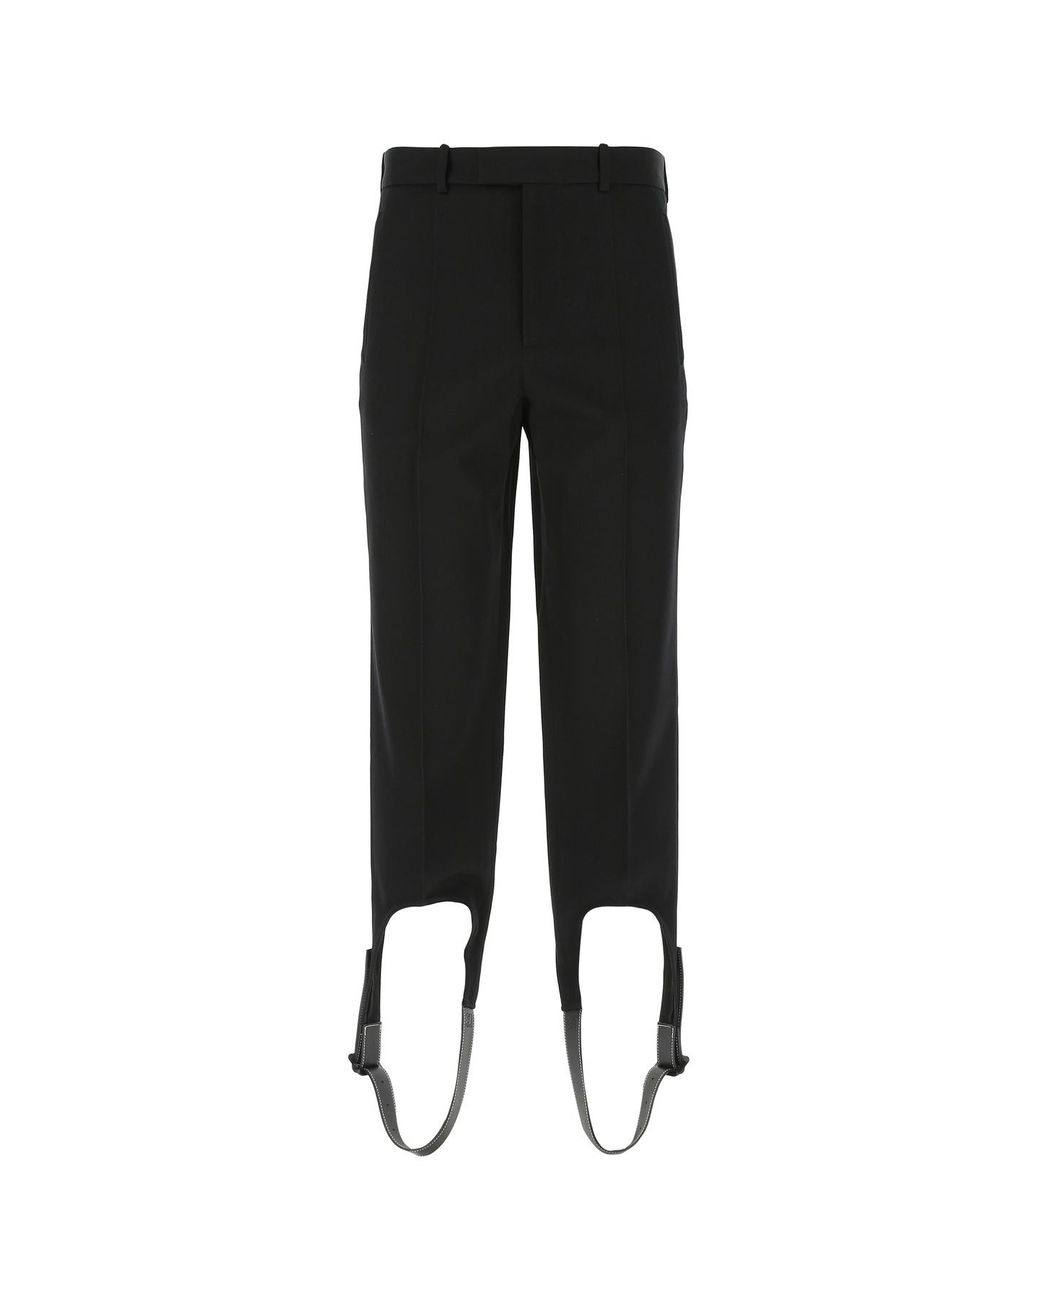 Loewe Wool Pant in Black for Men - Lyst